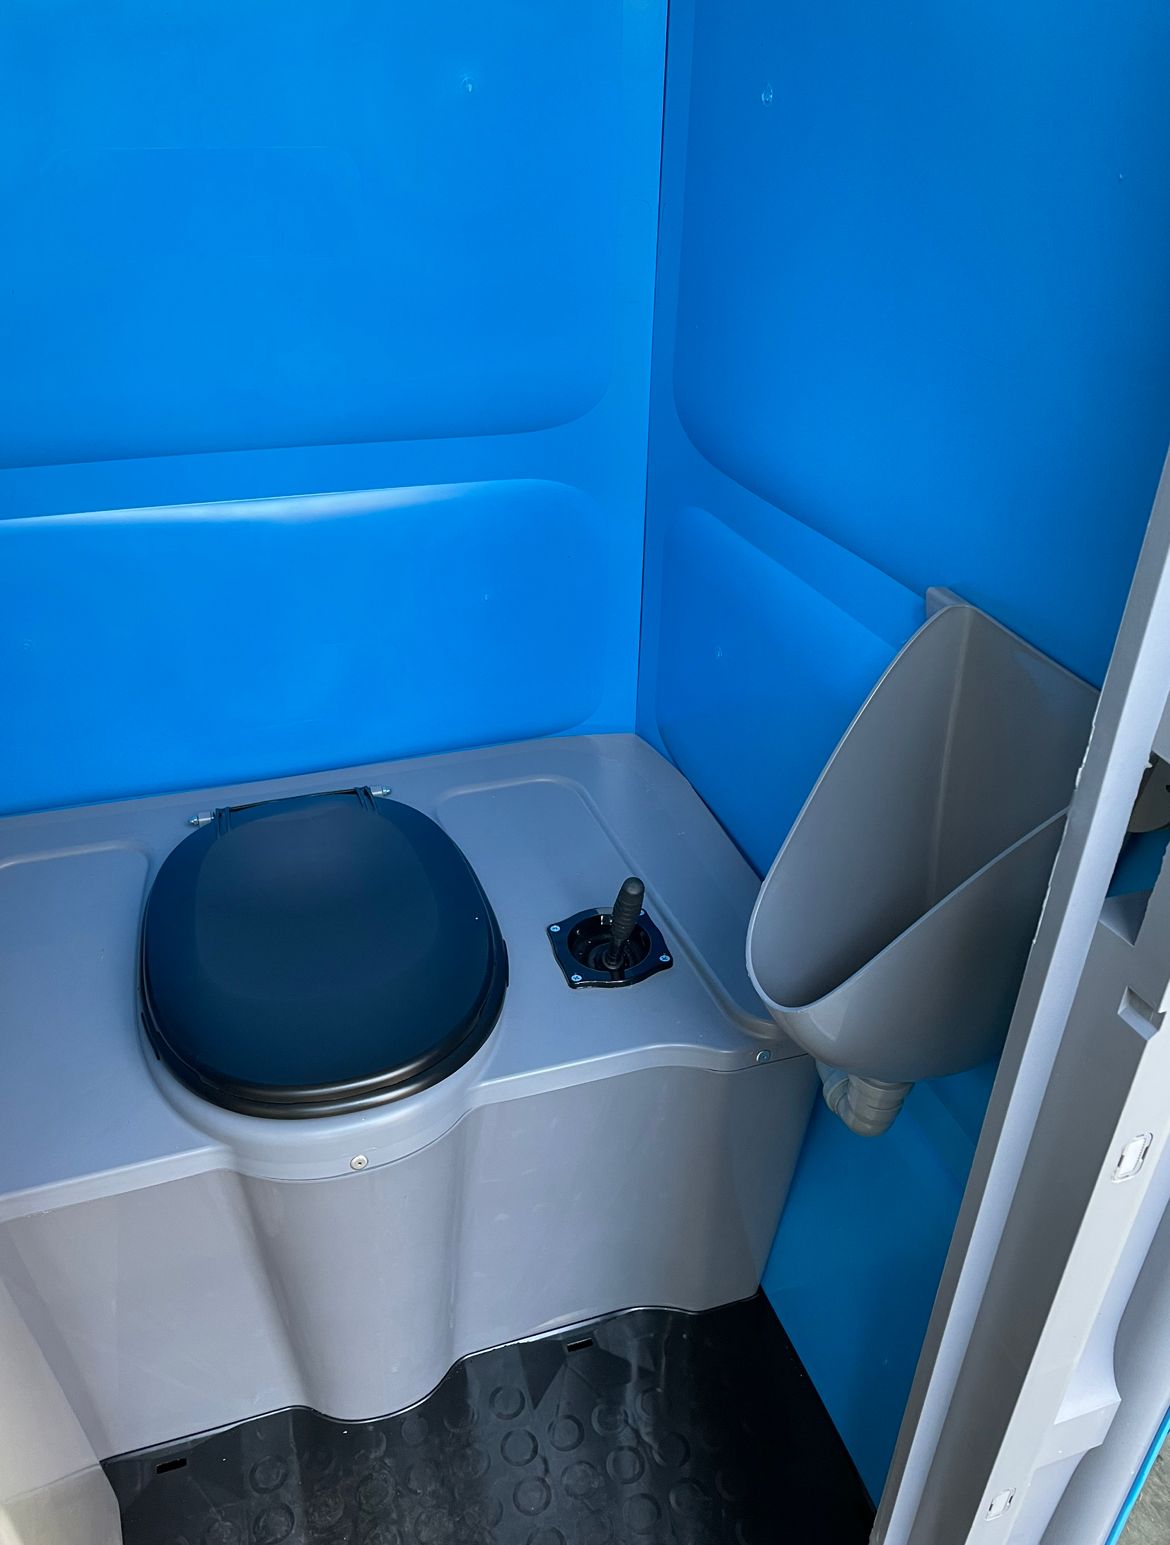 Acheter Toilettes mobiles en plastique, urinoir de voyage Portable